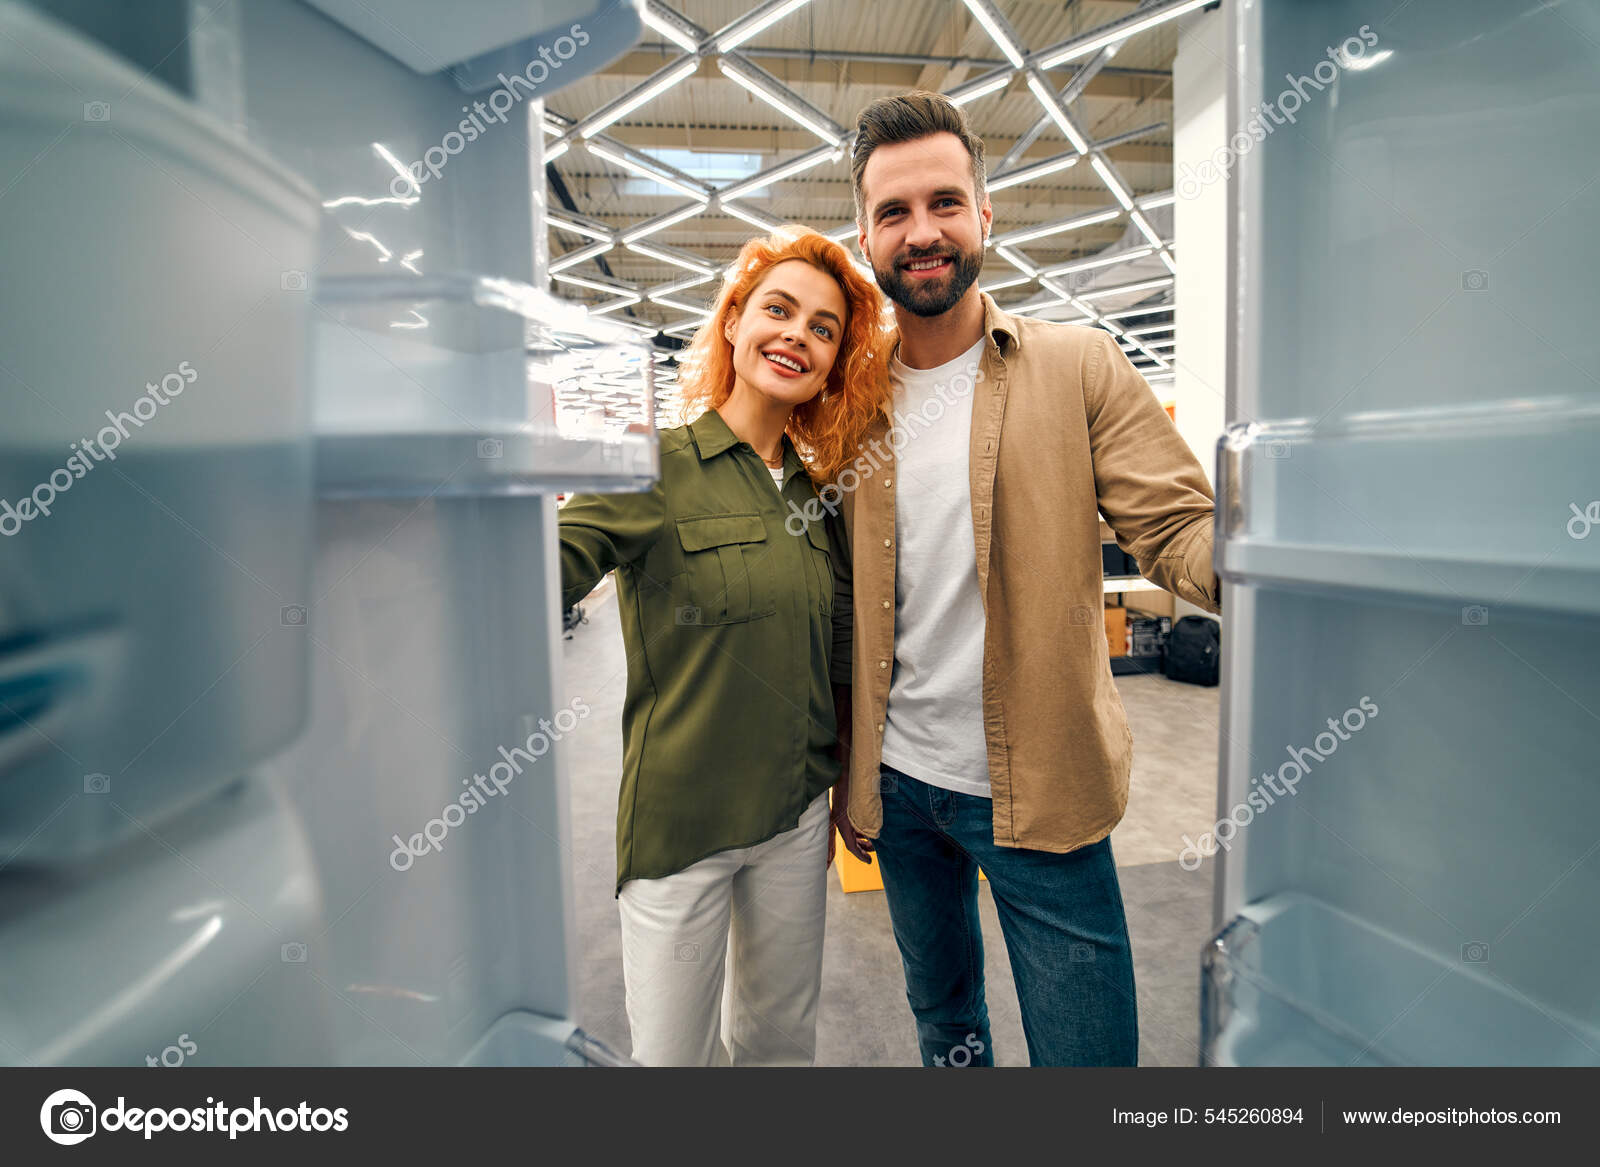 https://st.depositphotos.com/38378404/54526/i/1600/depositphotos_545260894-stock-photo-young-couple-choosing-refrigerator-home.jpg